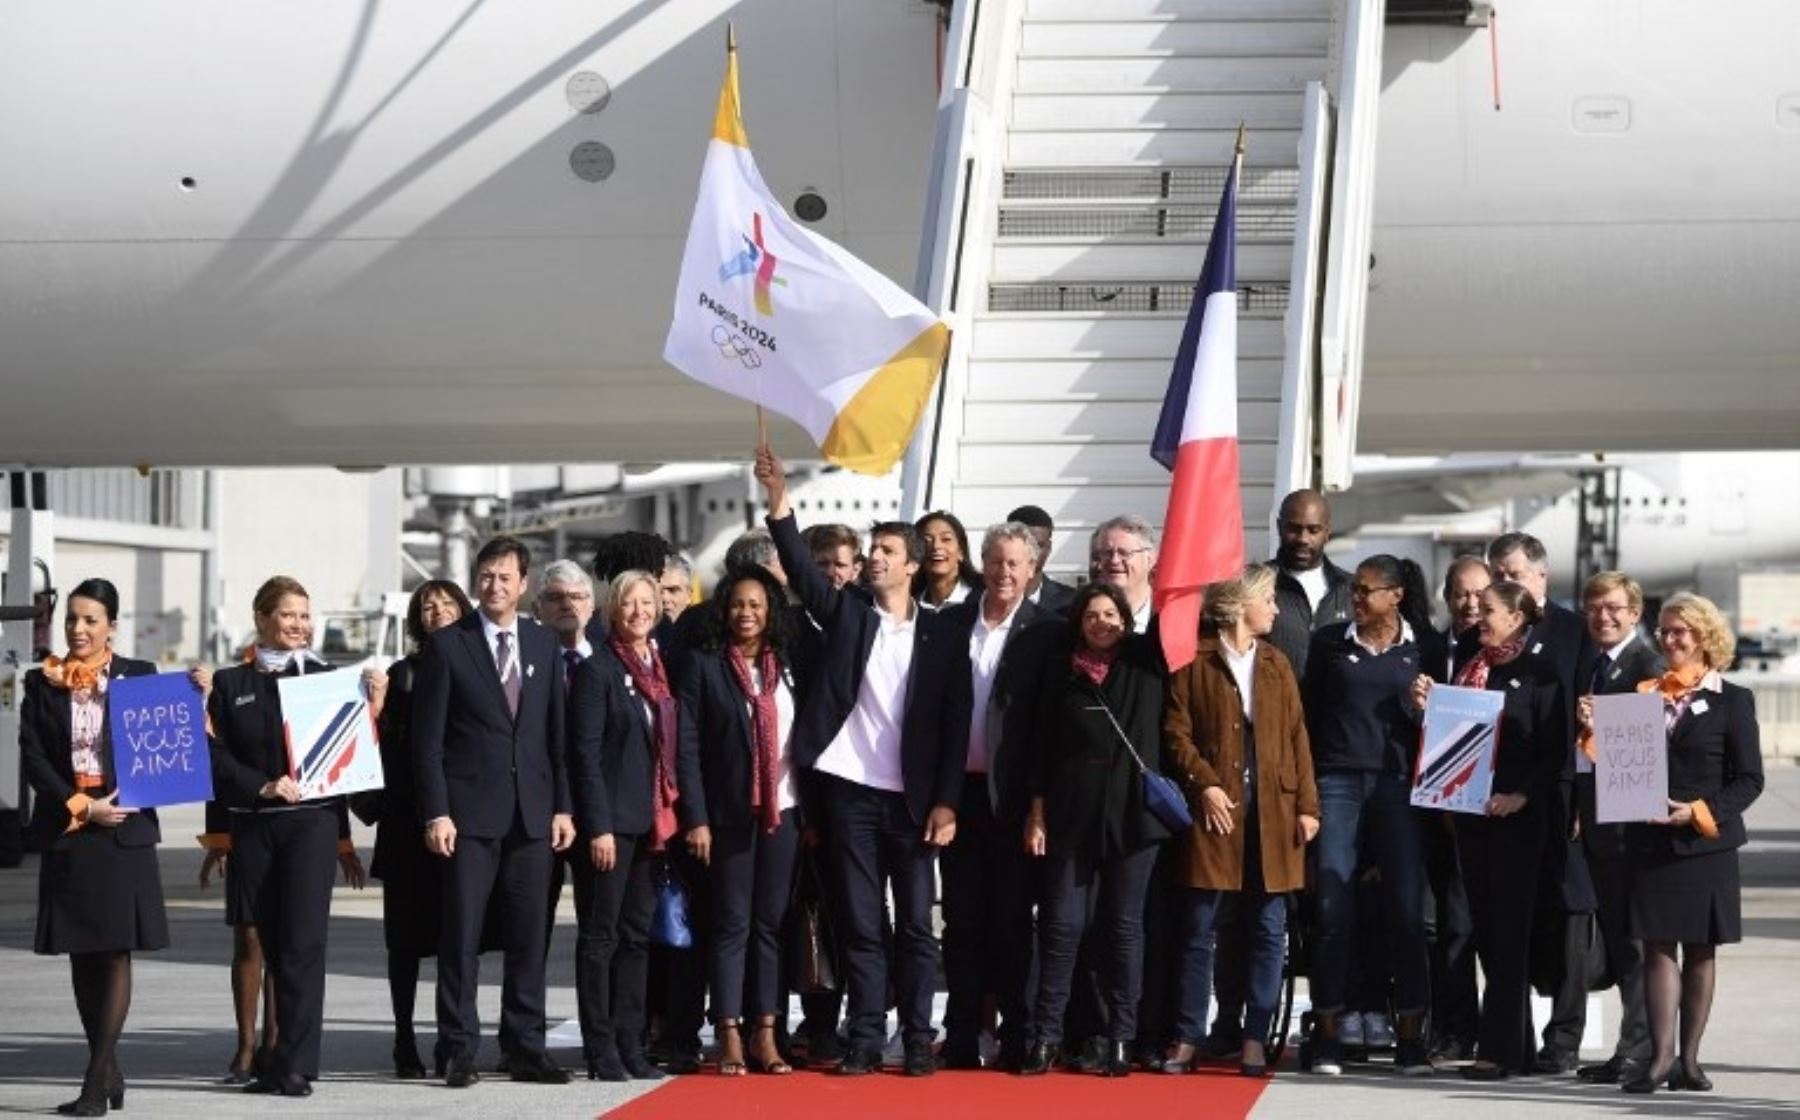 La comitiva de Paris 2024 llegó de Lima a Francia tras recibir la responsabilidad de organizar los juegos olímpicos.